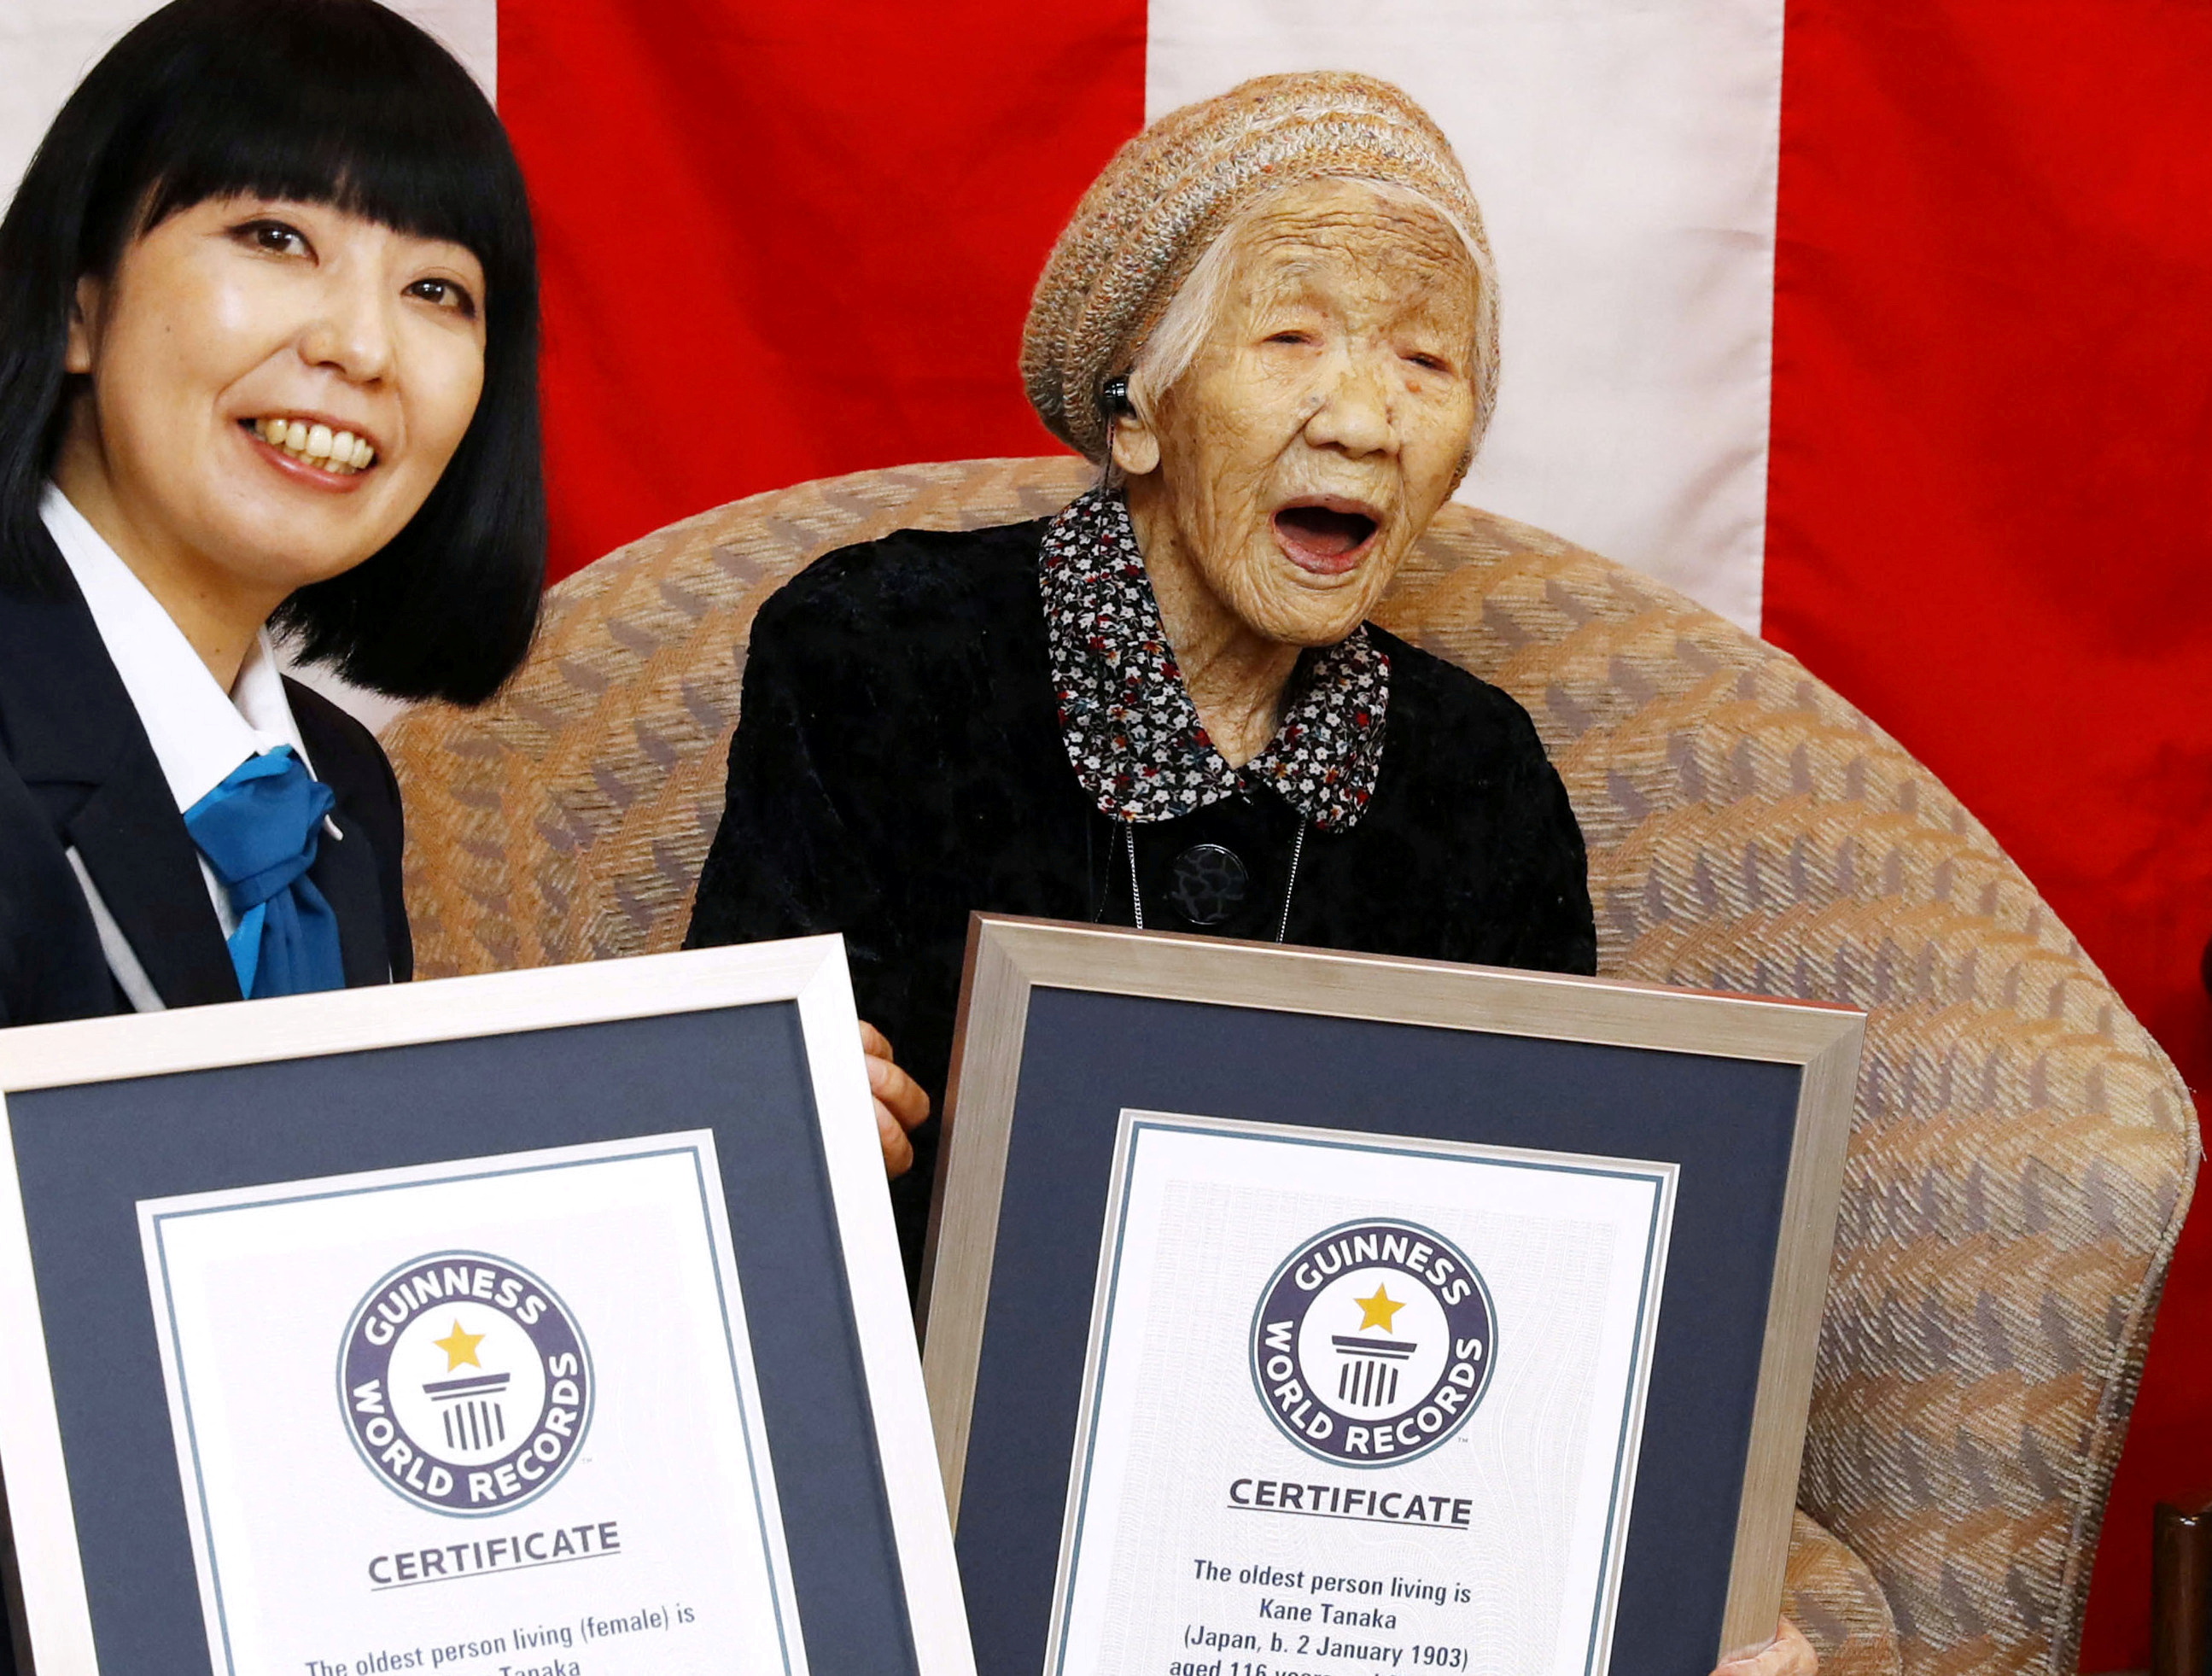 Kane Tanaka celebra durante una ceremonia para reconocerla como la persona más anciana del mundo según el Guinness World Records en Fukuoka, Japón, el 9 de marzo de 2019. (Kyodo/vía REUTERS)